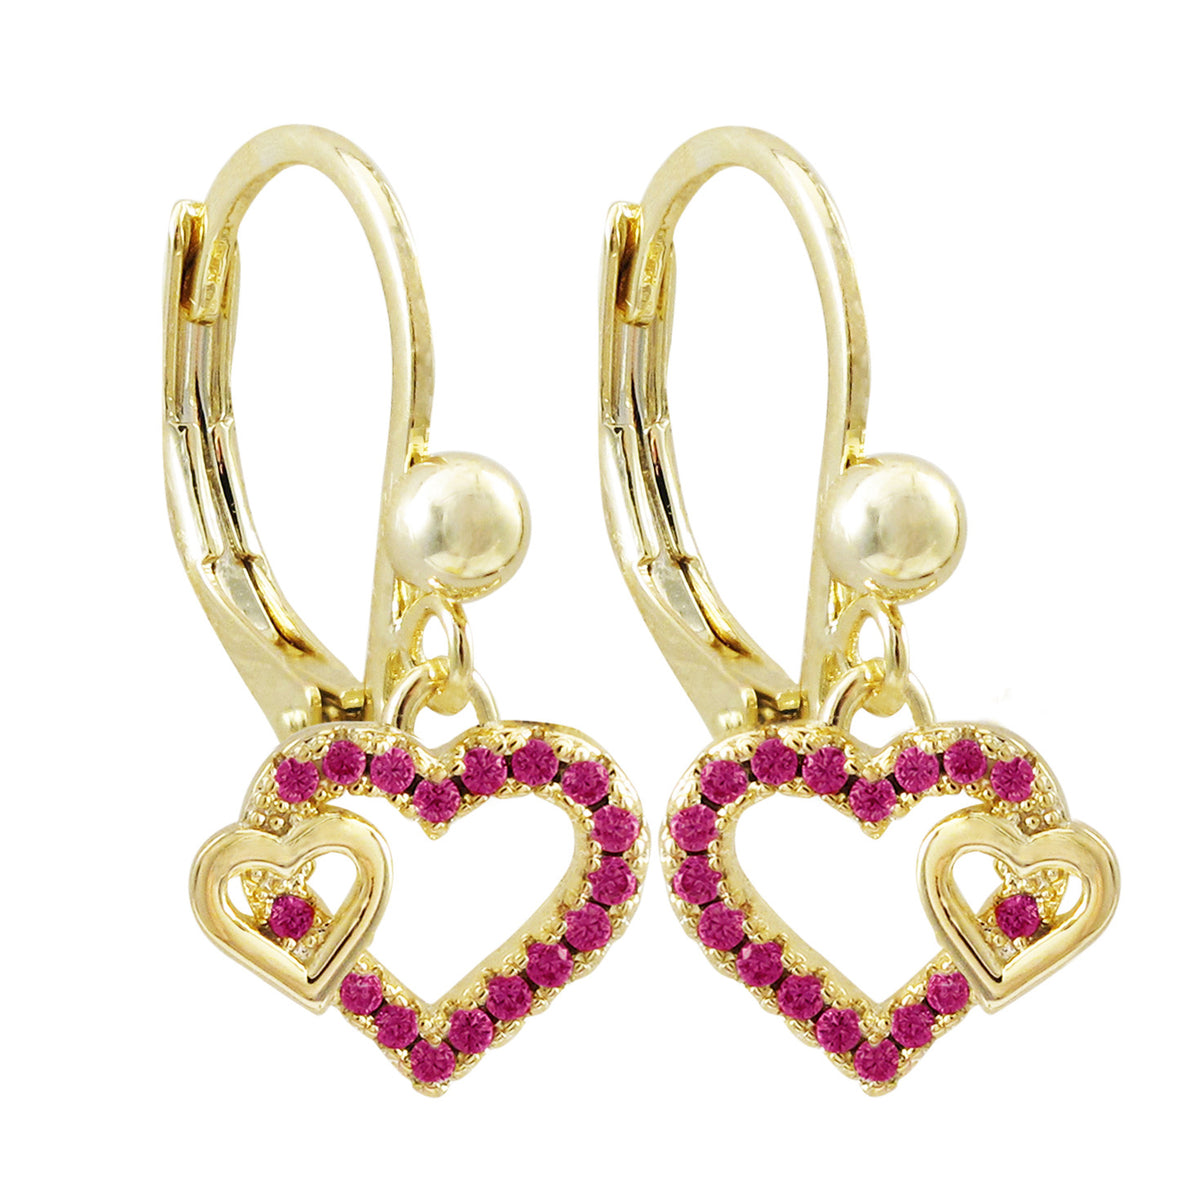 Fuscia double cut out heart earrings